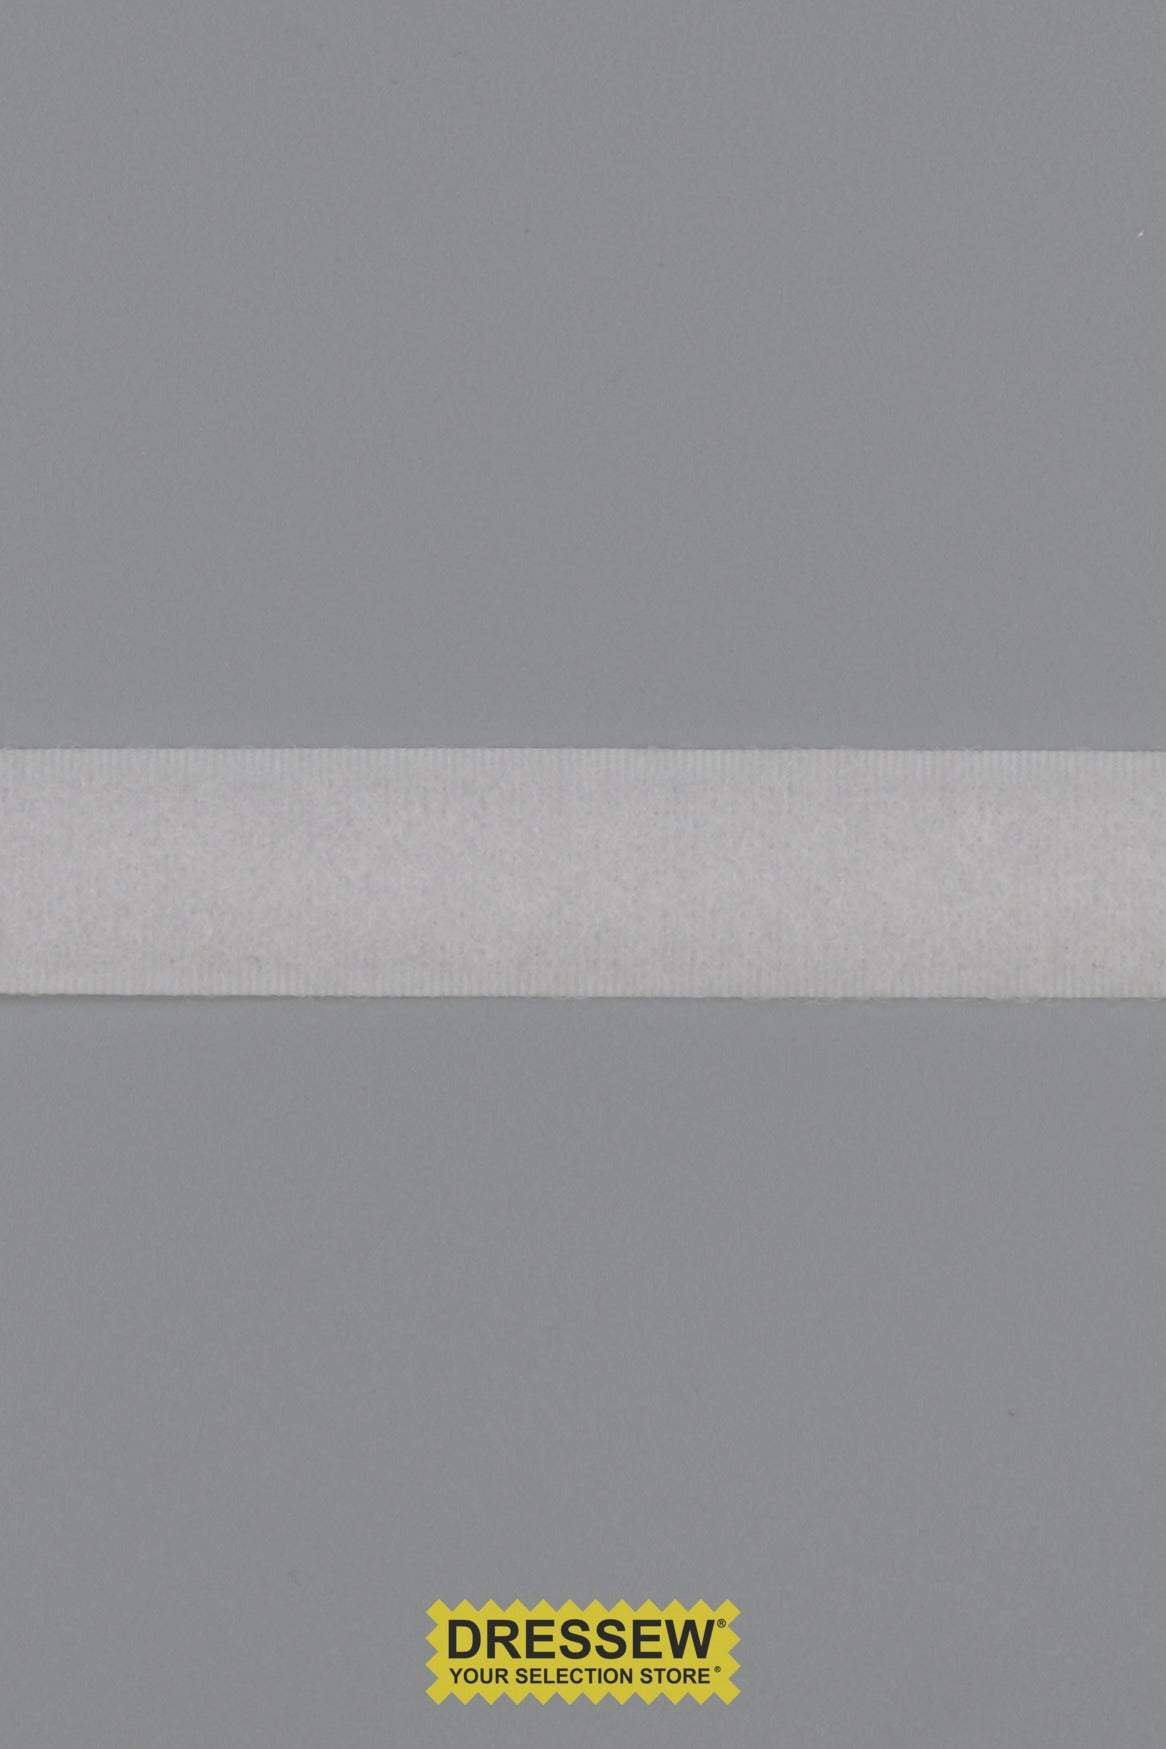 Loop Tape 16mm (5/8") White